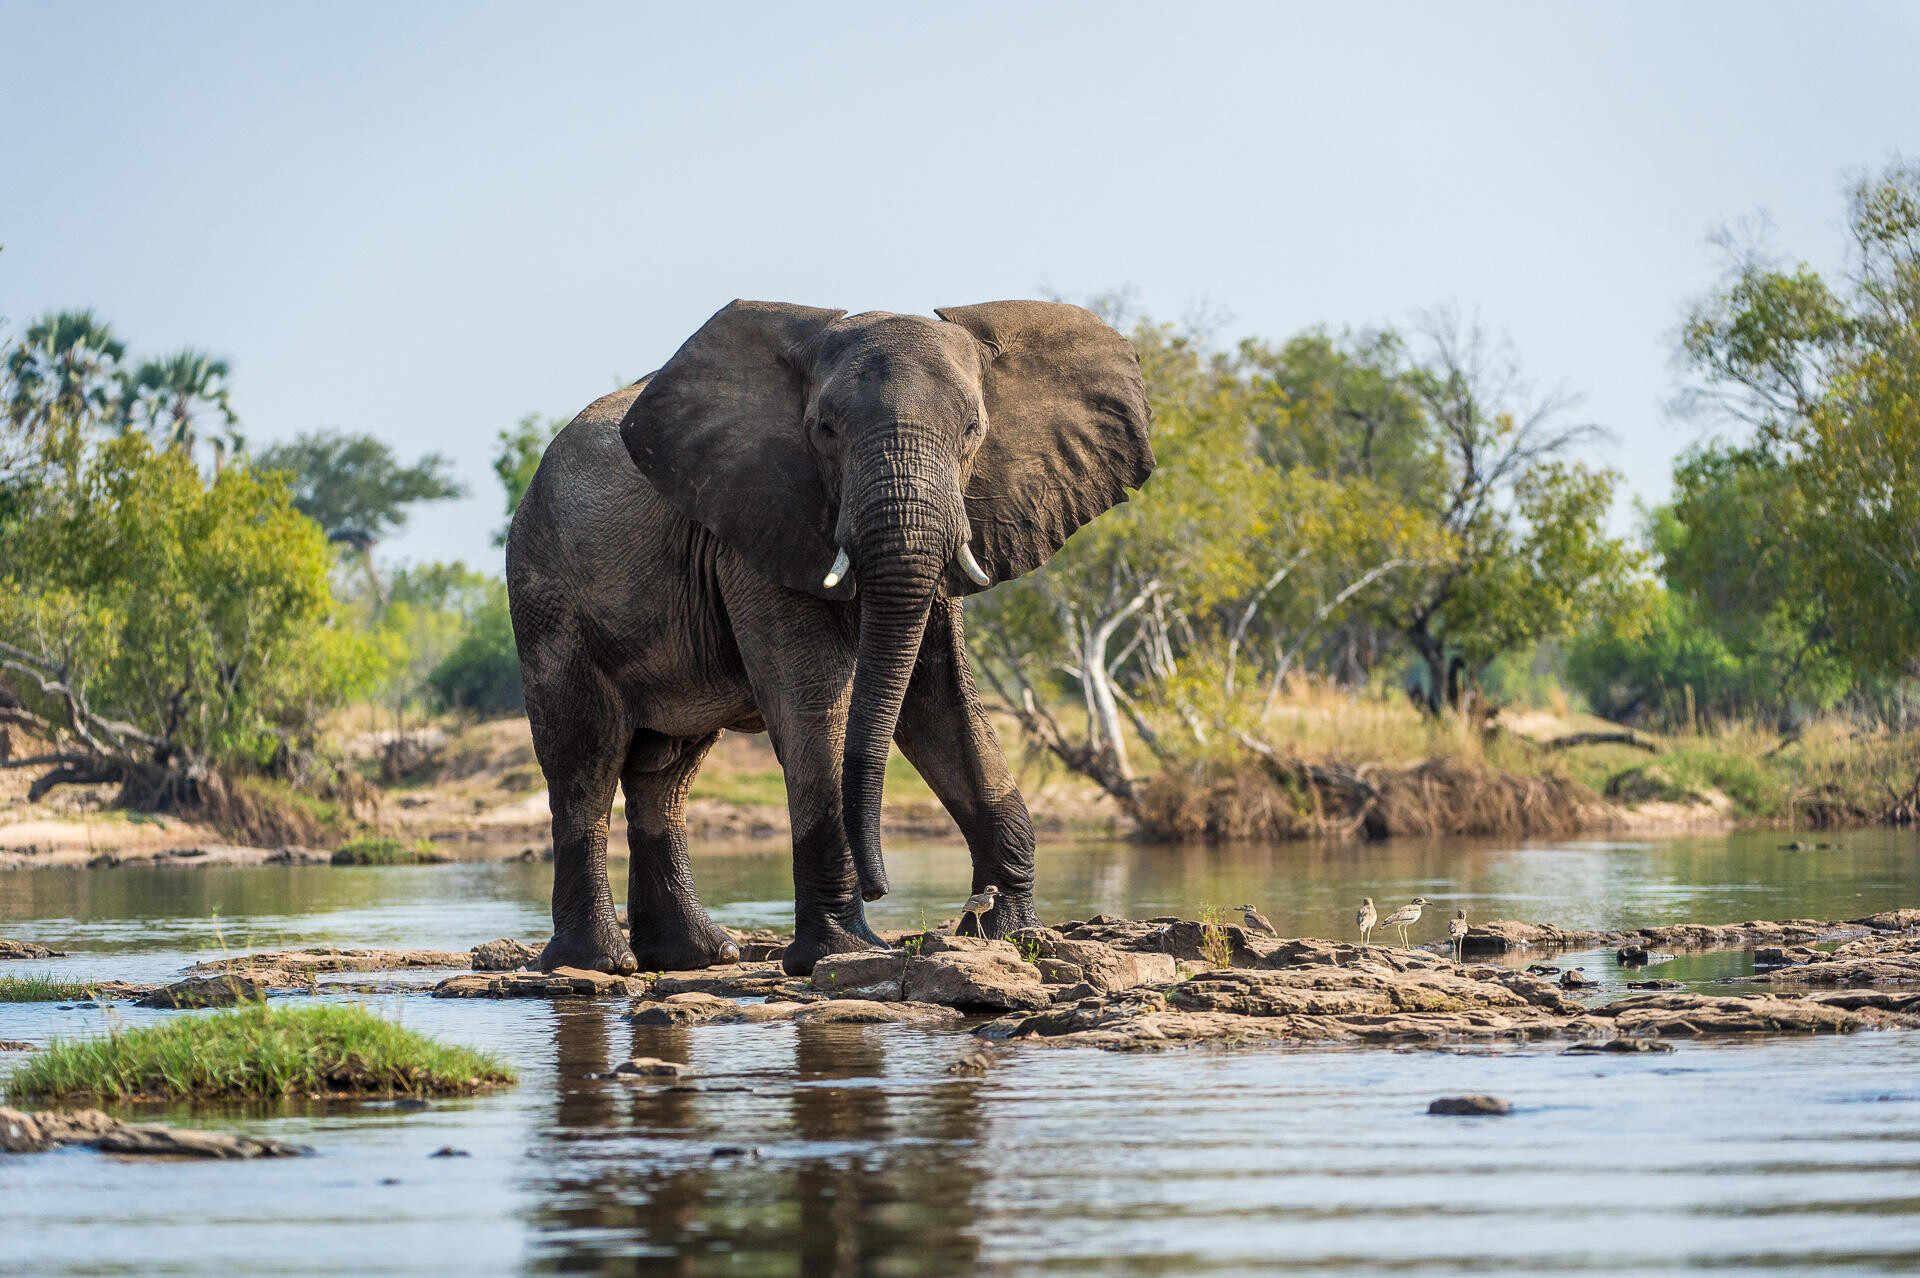 Elephants in Zambia